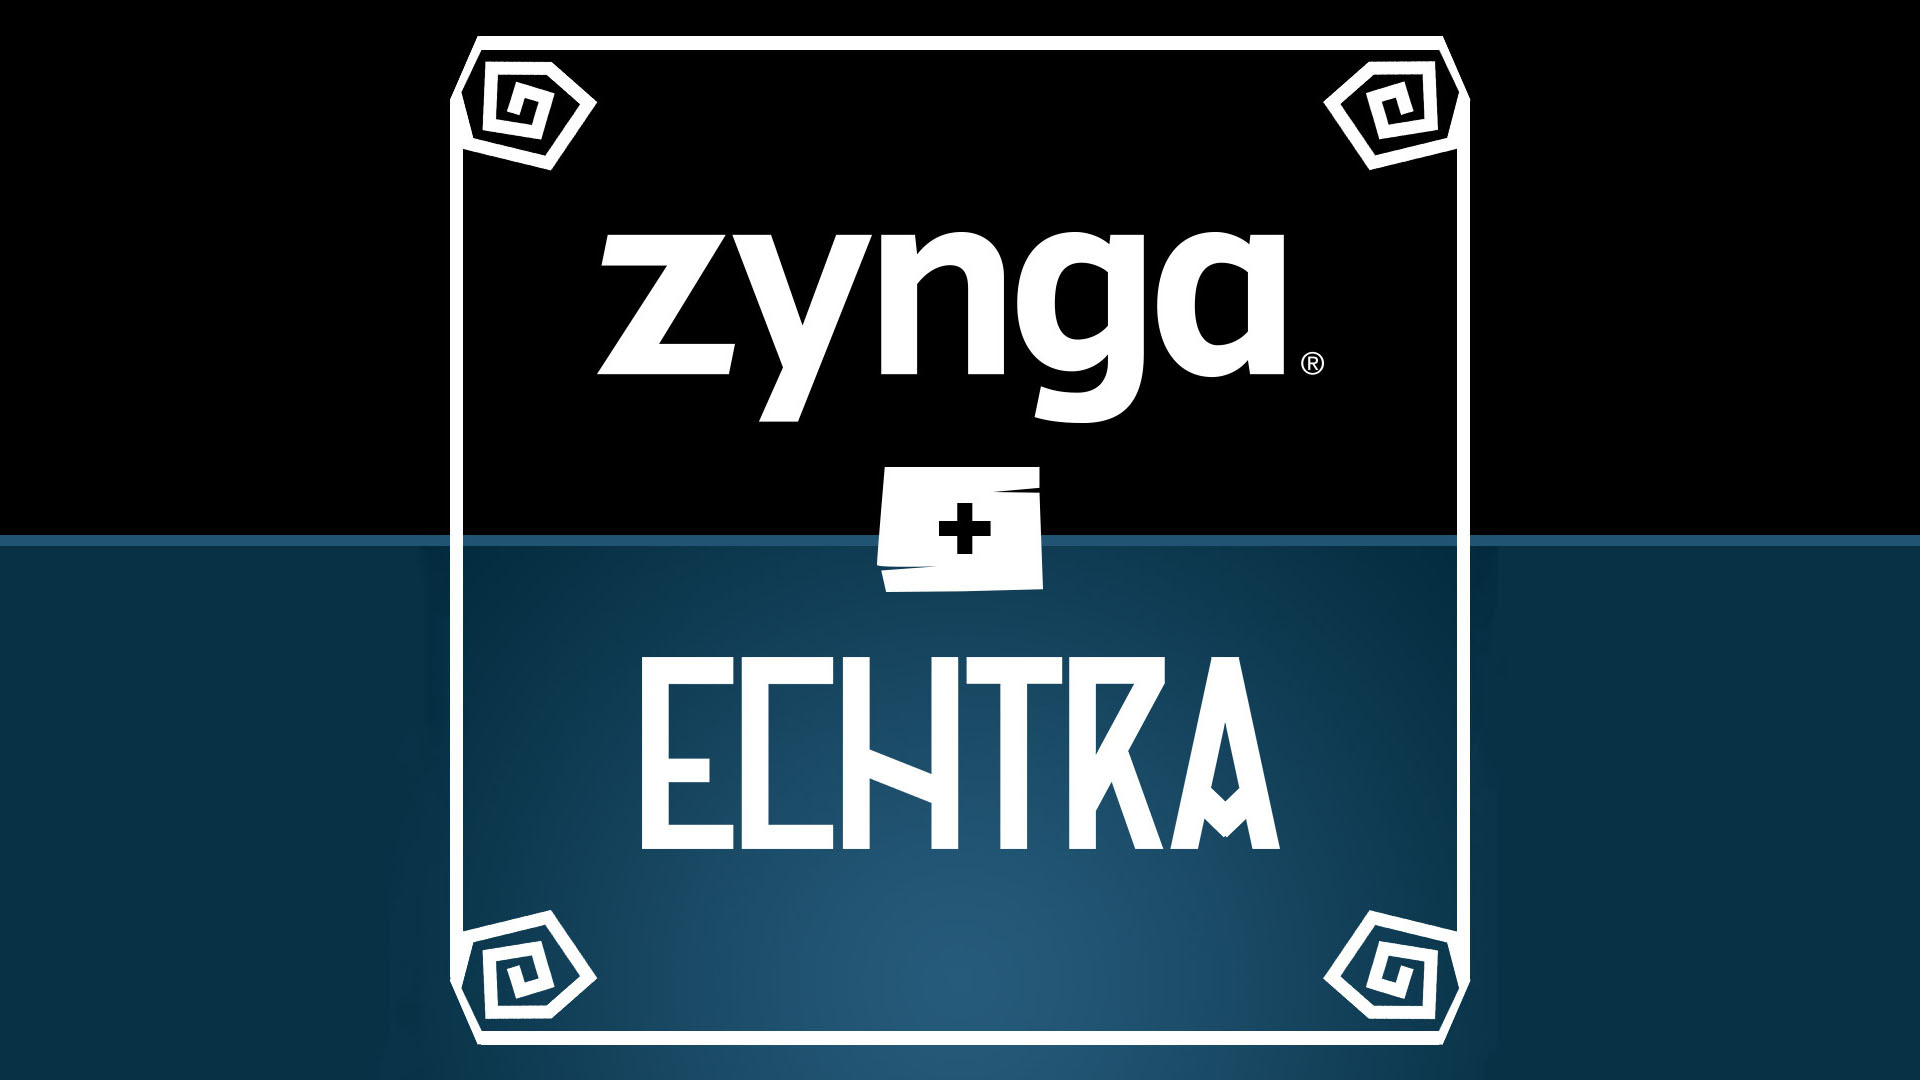 Zynga Echtra 03 04 21 1